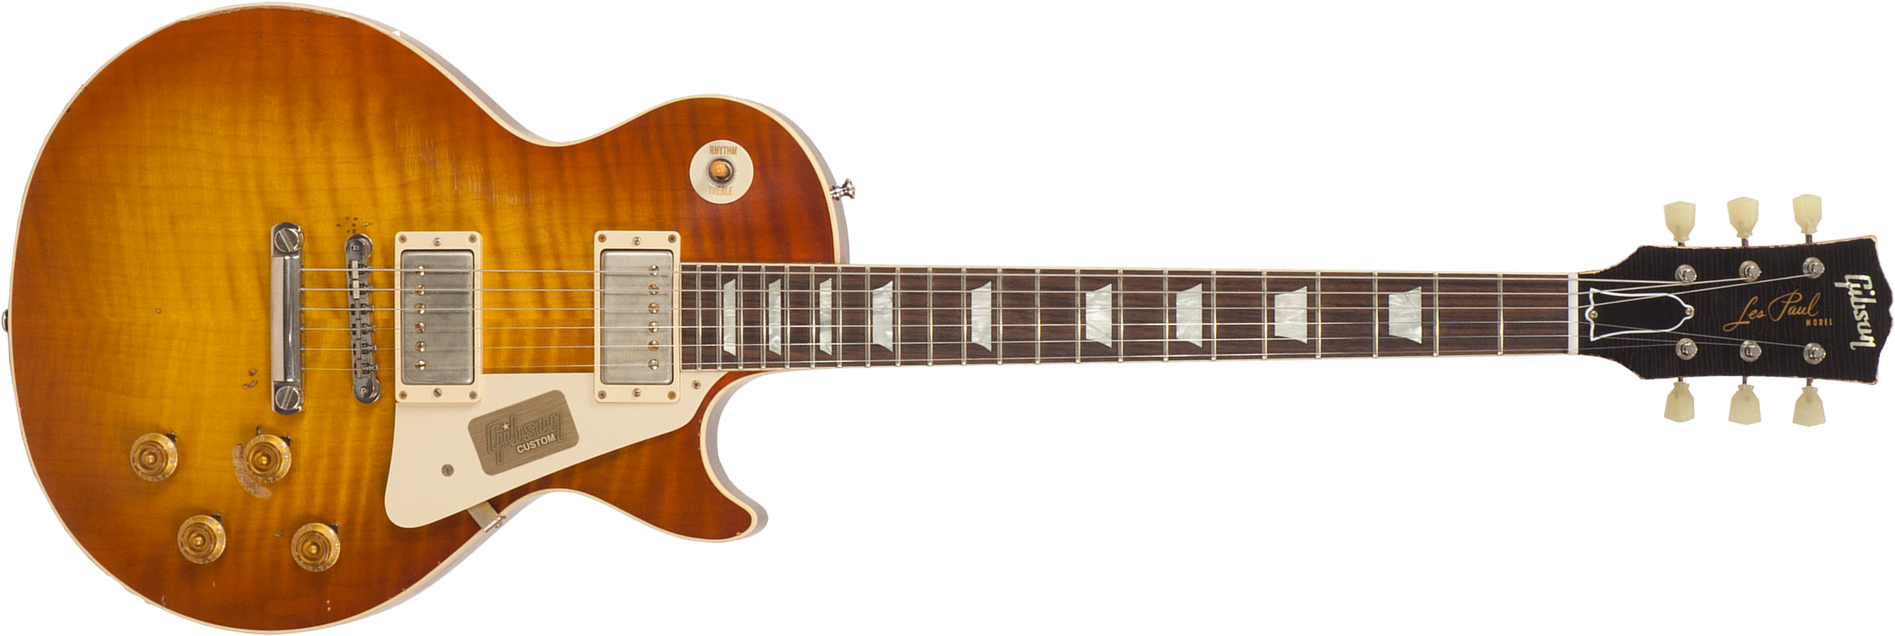 Gibson Custom Shop M2m Les Paul Standard 1959 2h Ht Rw #r961618 - Aged Sunrise Teaburst - Guitarra eléctrica de corte único. - Main picture